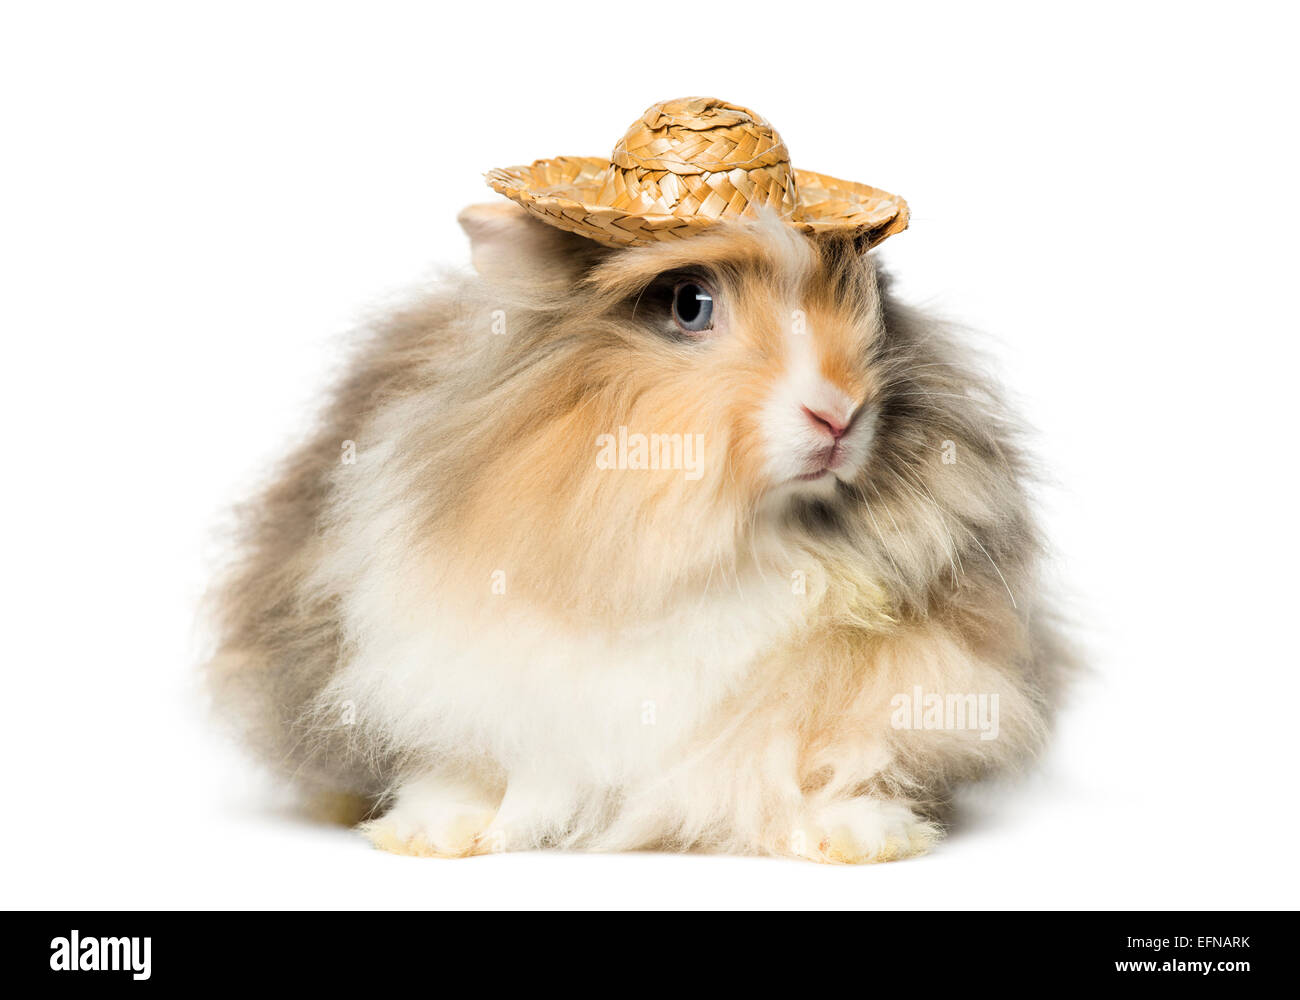 Conejo vistiendo un sombrero de paja en la parte delantera del fondo blanco. Foto de stock